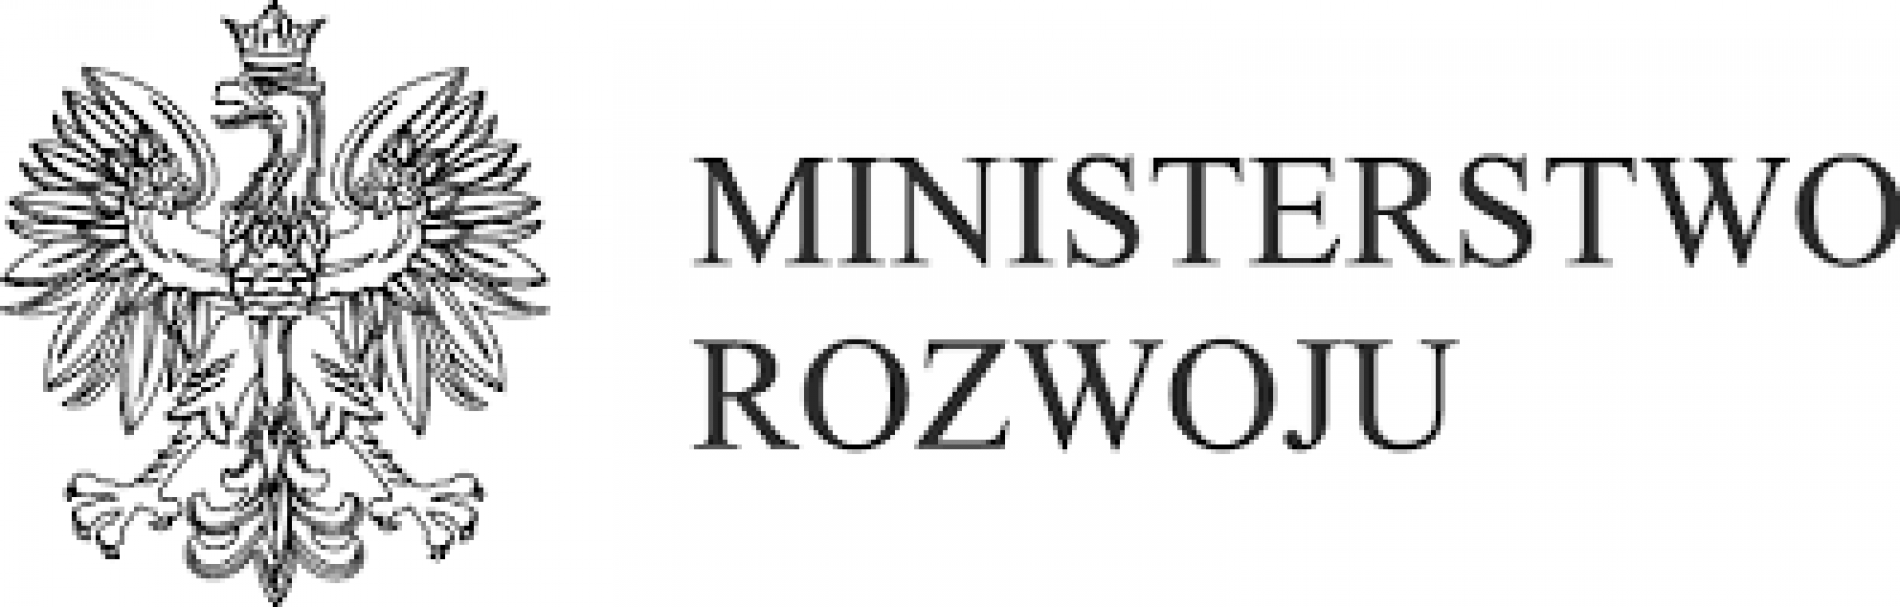 Ministerstwo Rozwoju zapowiada przyśpieszenie Programu Operacyjnego Polska Wschodnia